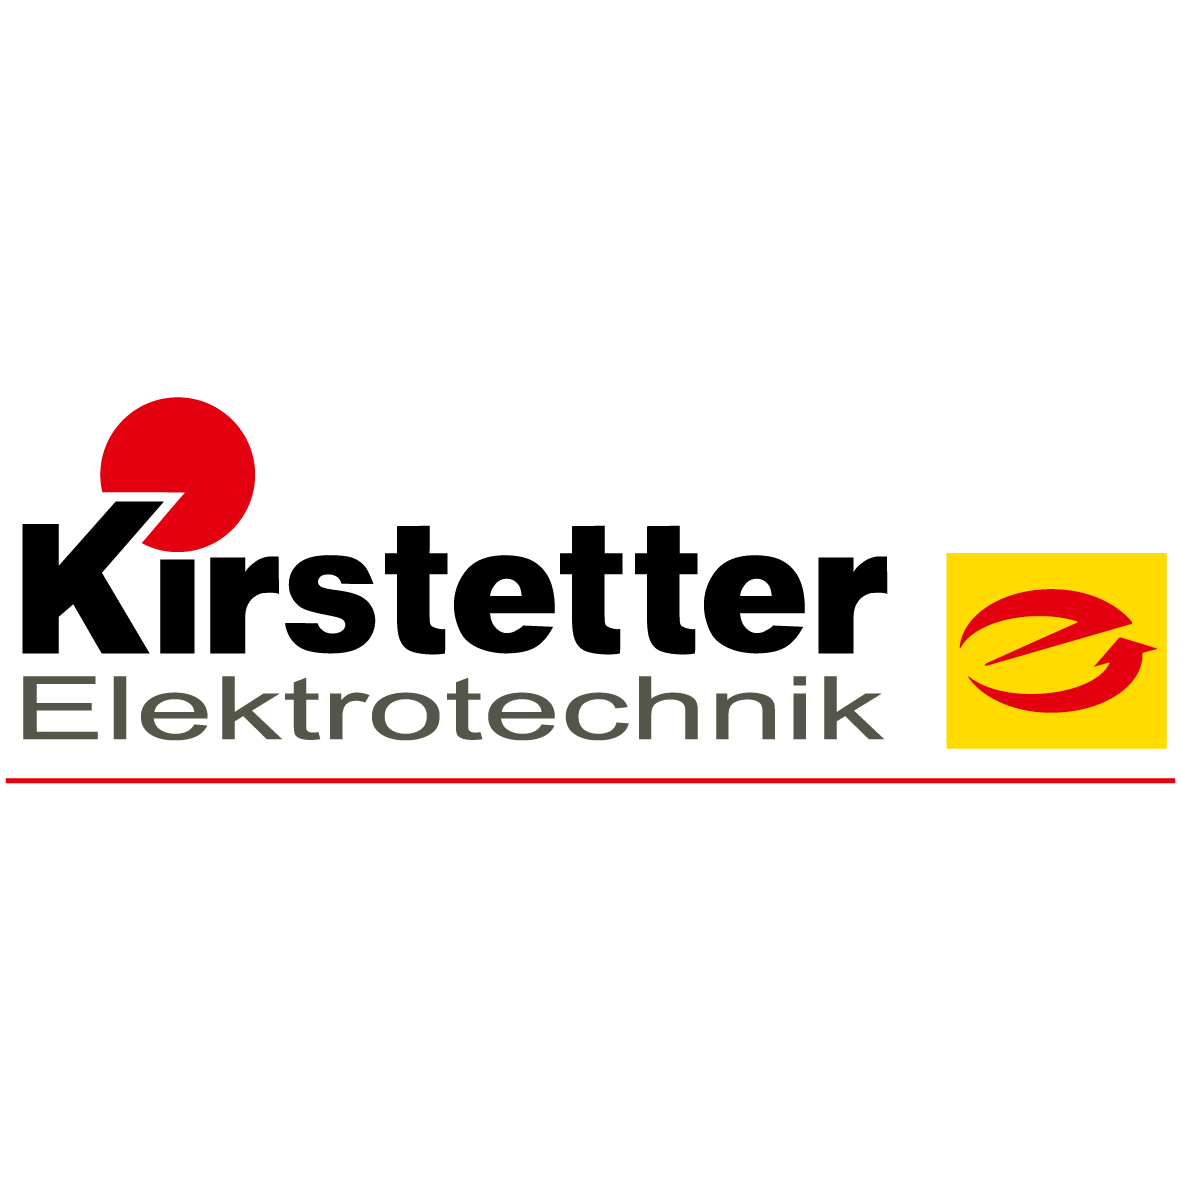 Kirstetter Elektrotechnik